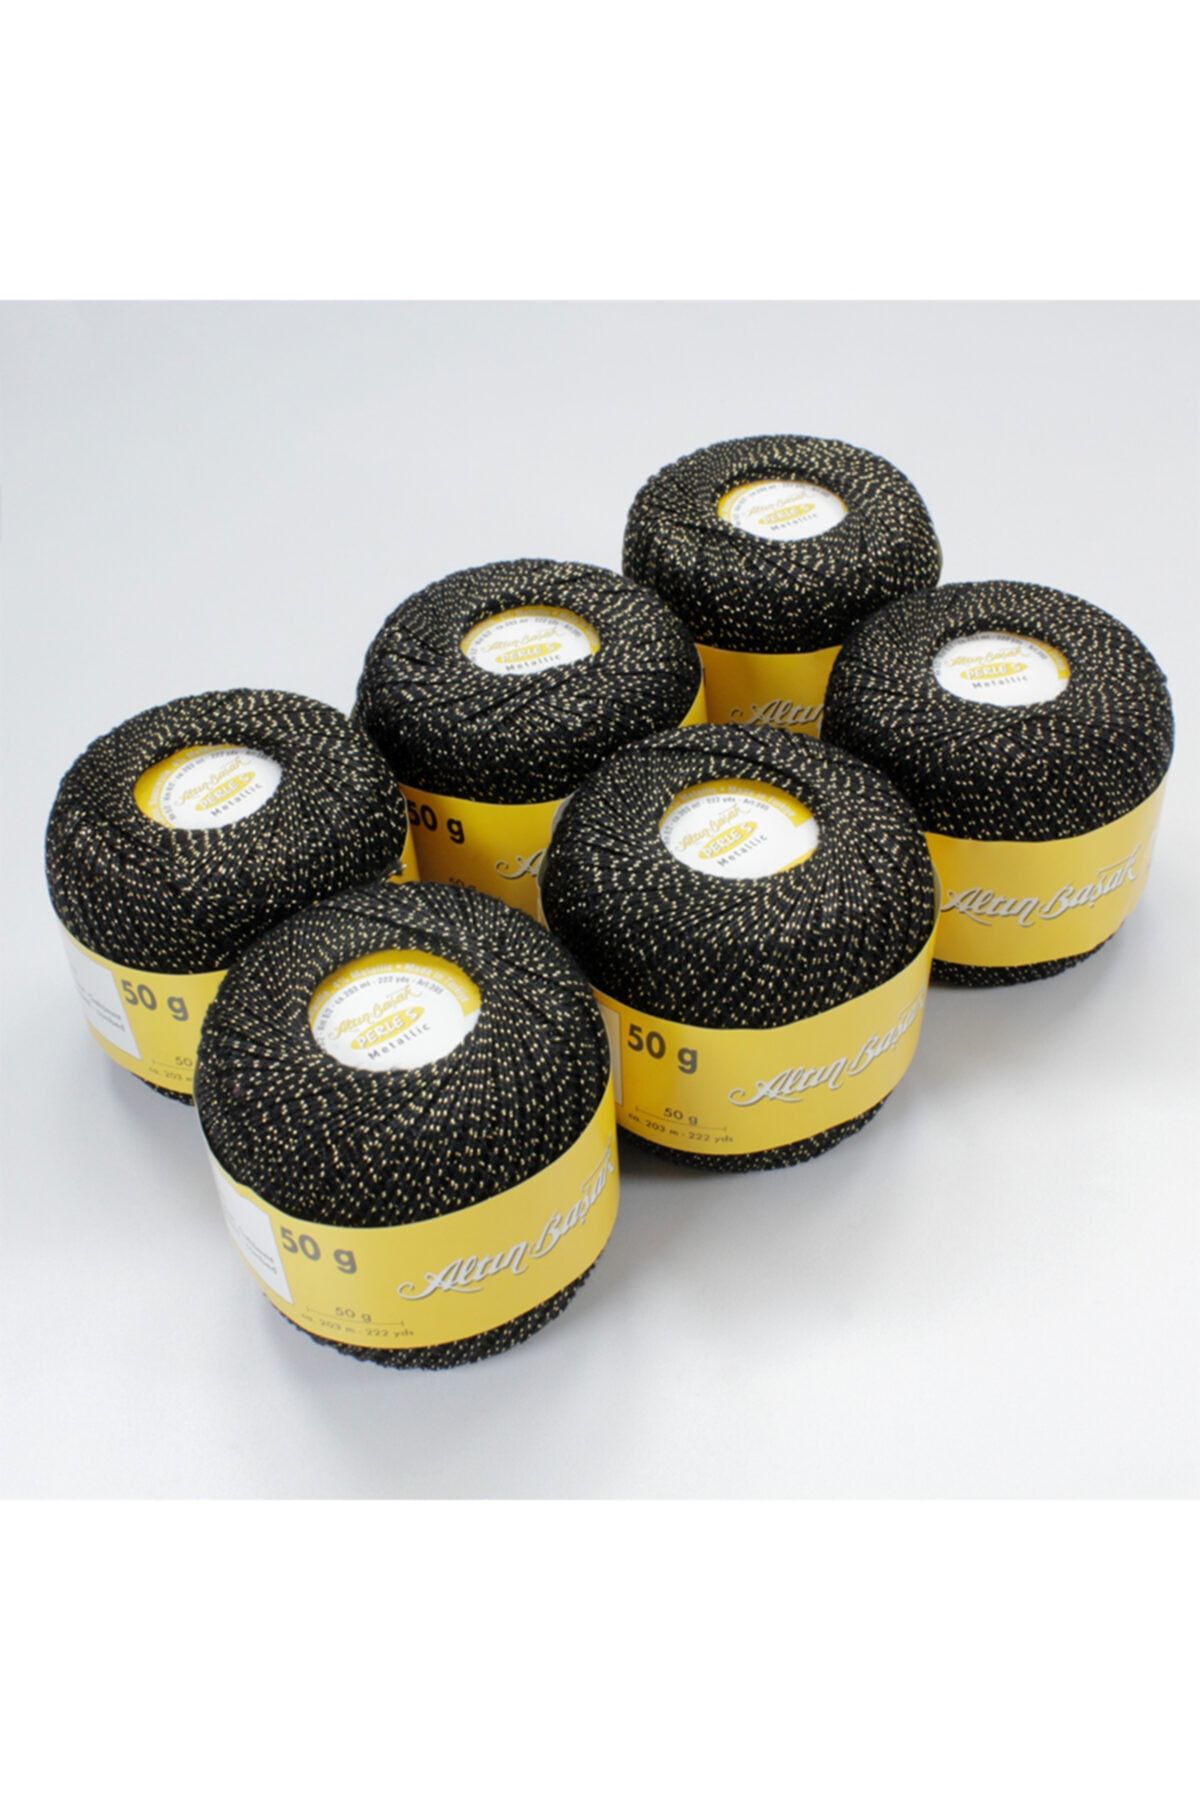 Altınbaşak Perles El Örgü Ipi Renk Siyah Sarı Simli 6 Adet Toplam 300 gram Ve 1218 Metre